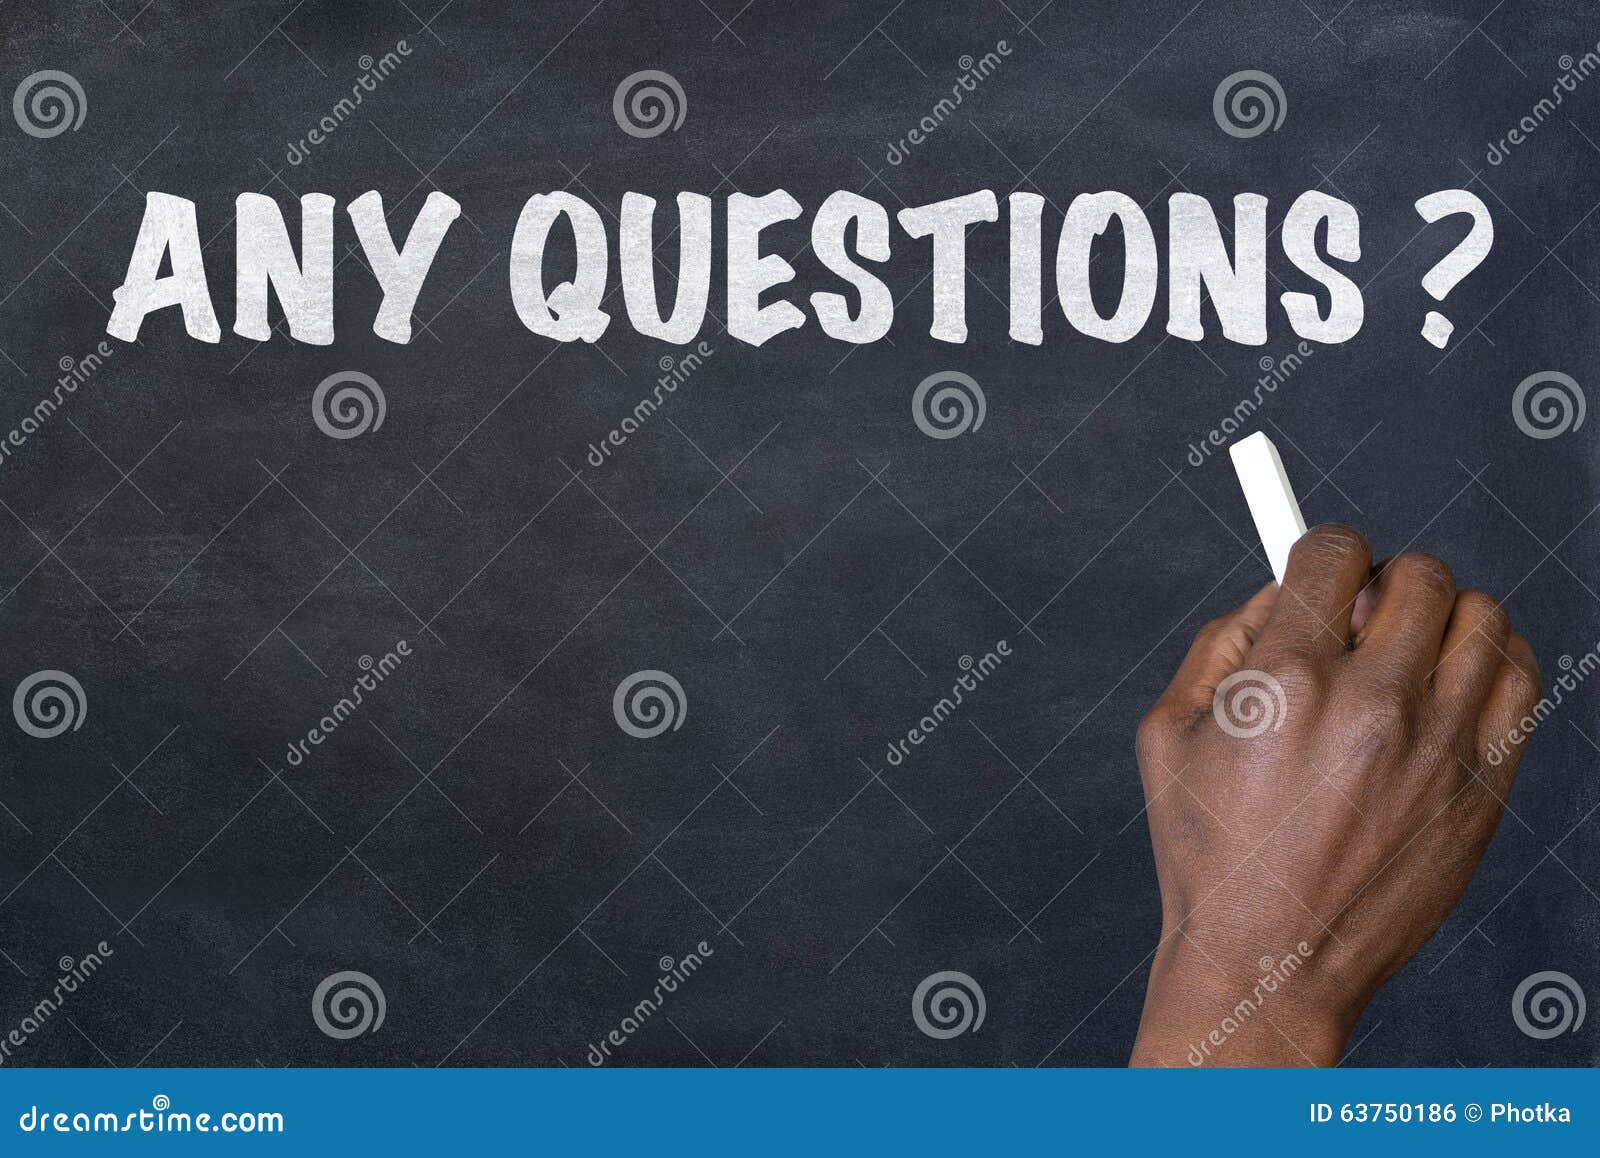 phrase any questions written on blackboard